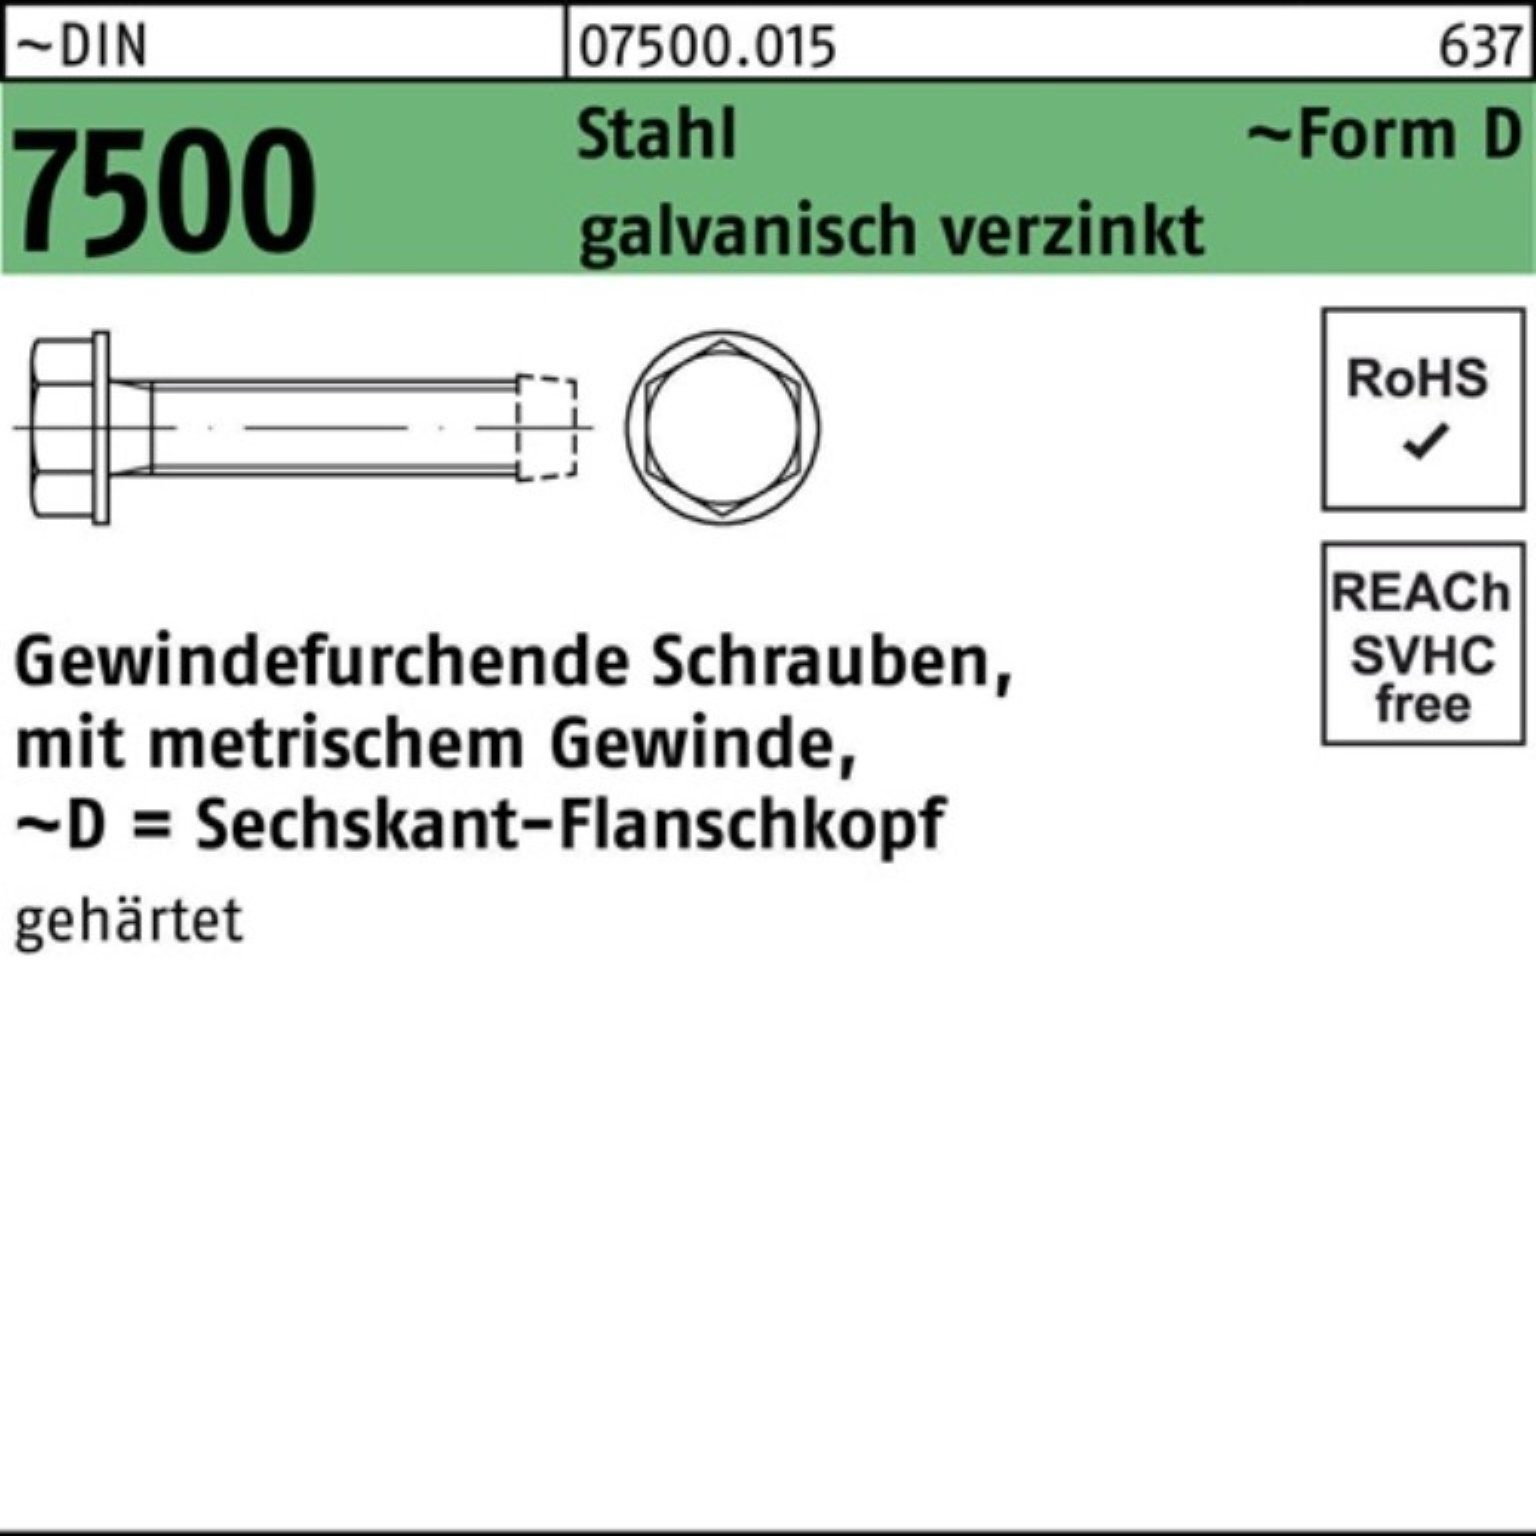 Reyher Gewindeschraube DIN 5x40 6-ktflanschkopf Gewindefurchendeschraube Pack 7500 DM 1000er